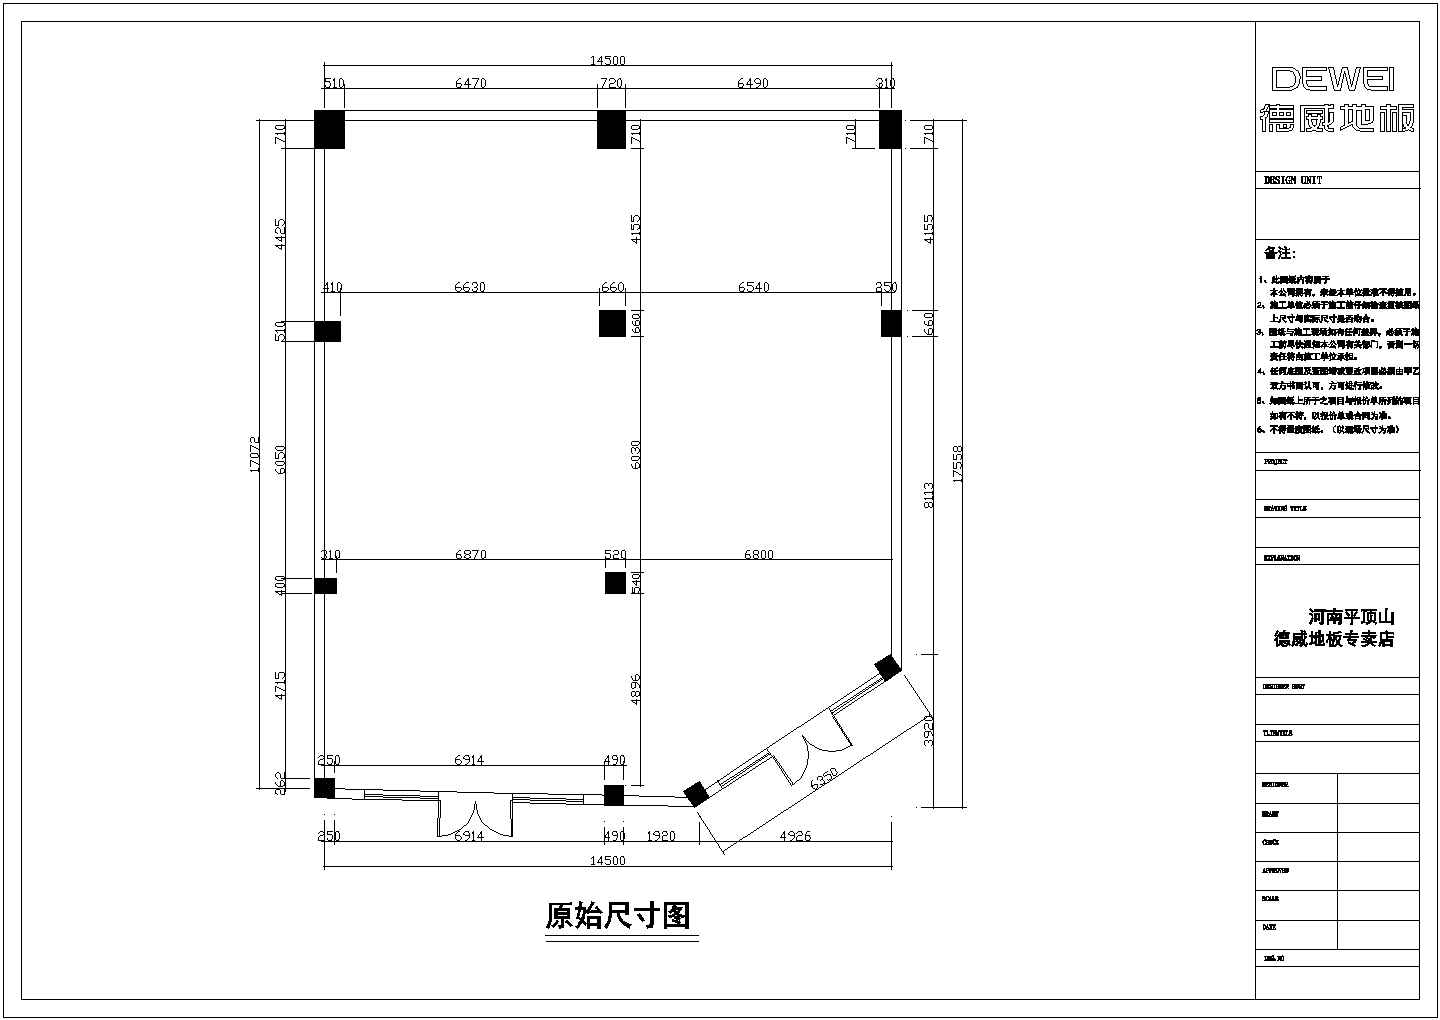 南京某家具城地板专卖店全套装修设计施工cad图纸